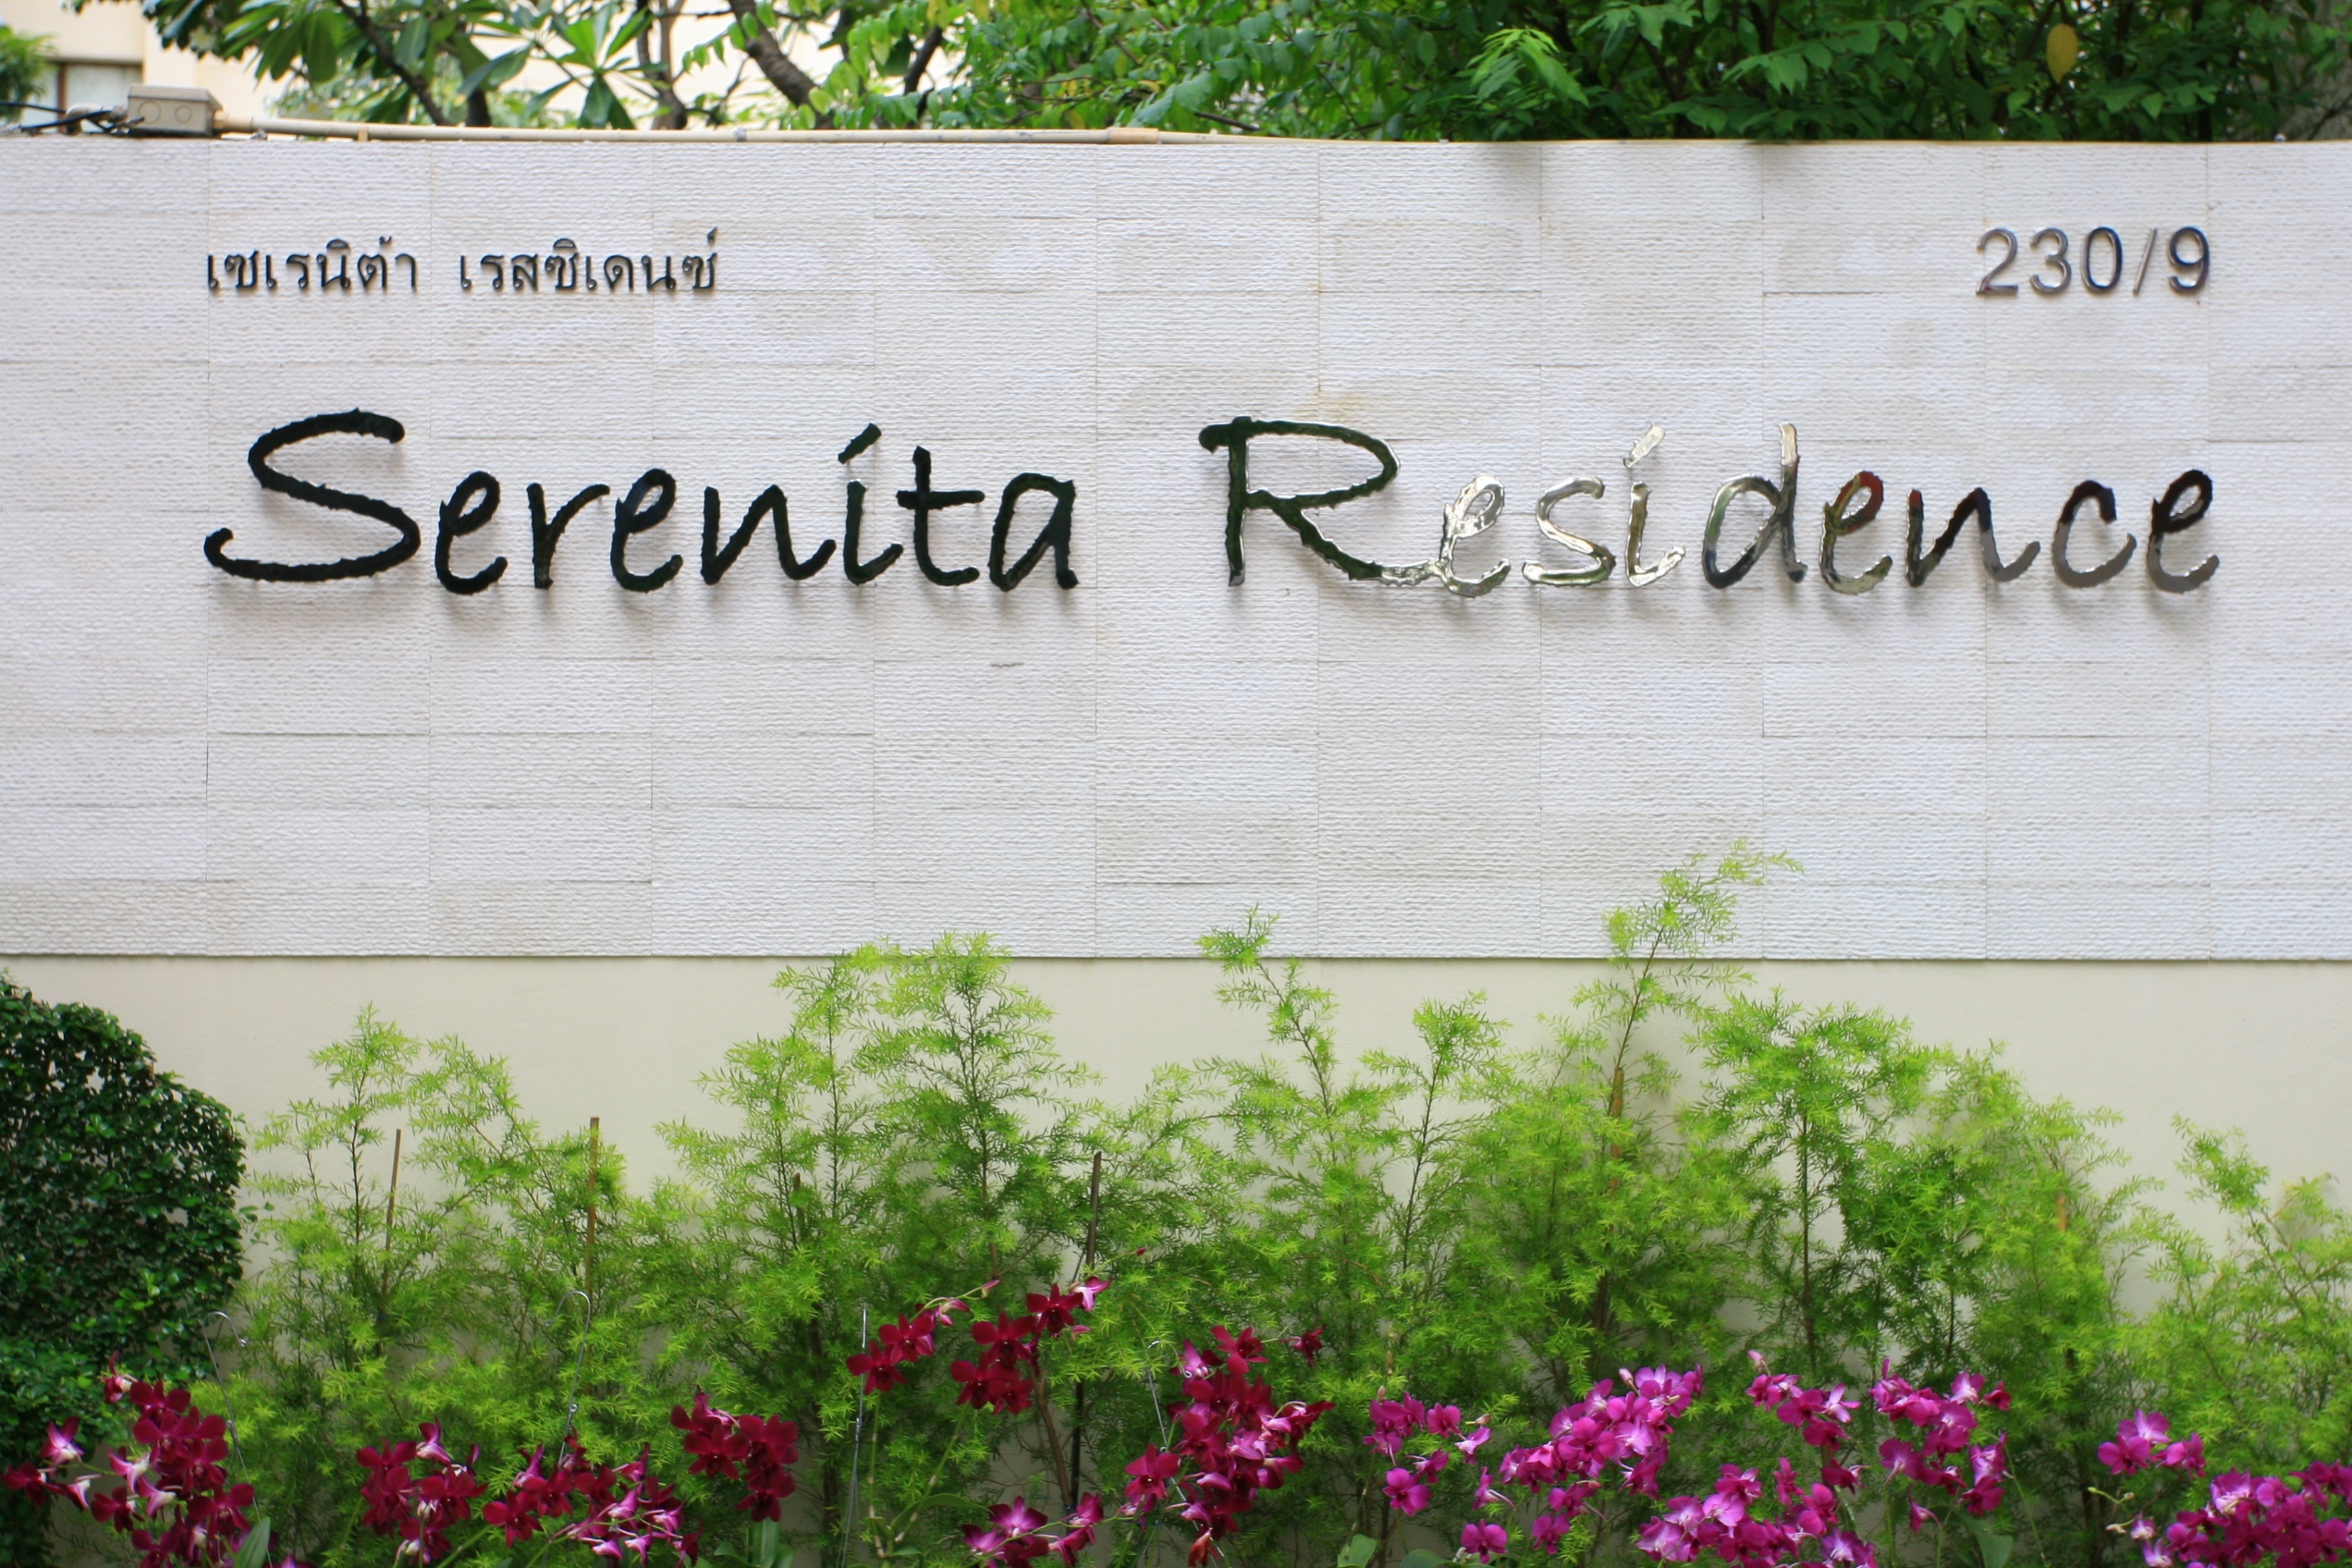 Serenita Residence Signage